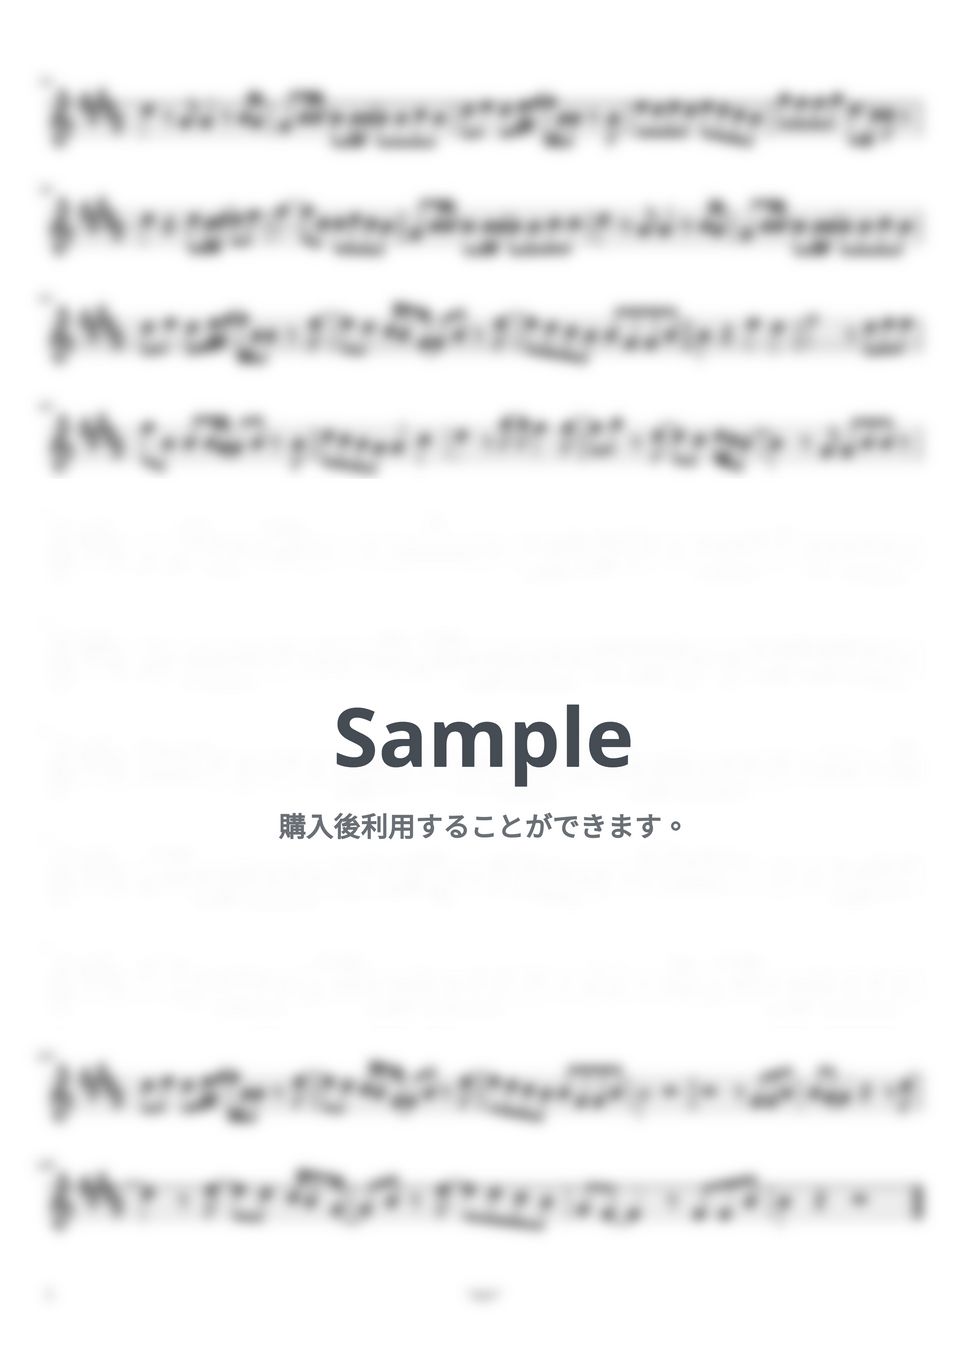 あいみょん - マリーゴールド by ayako music school